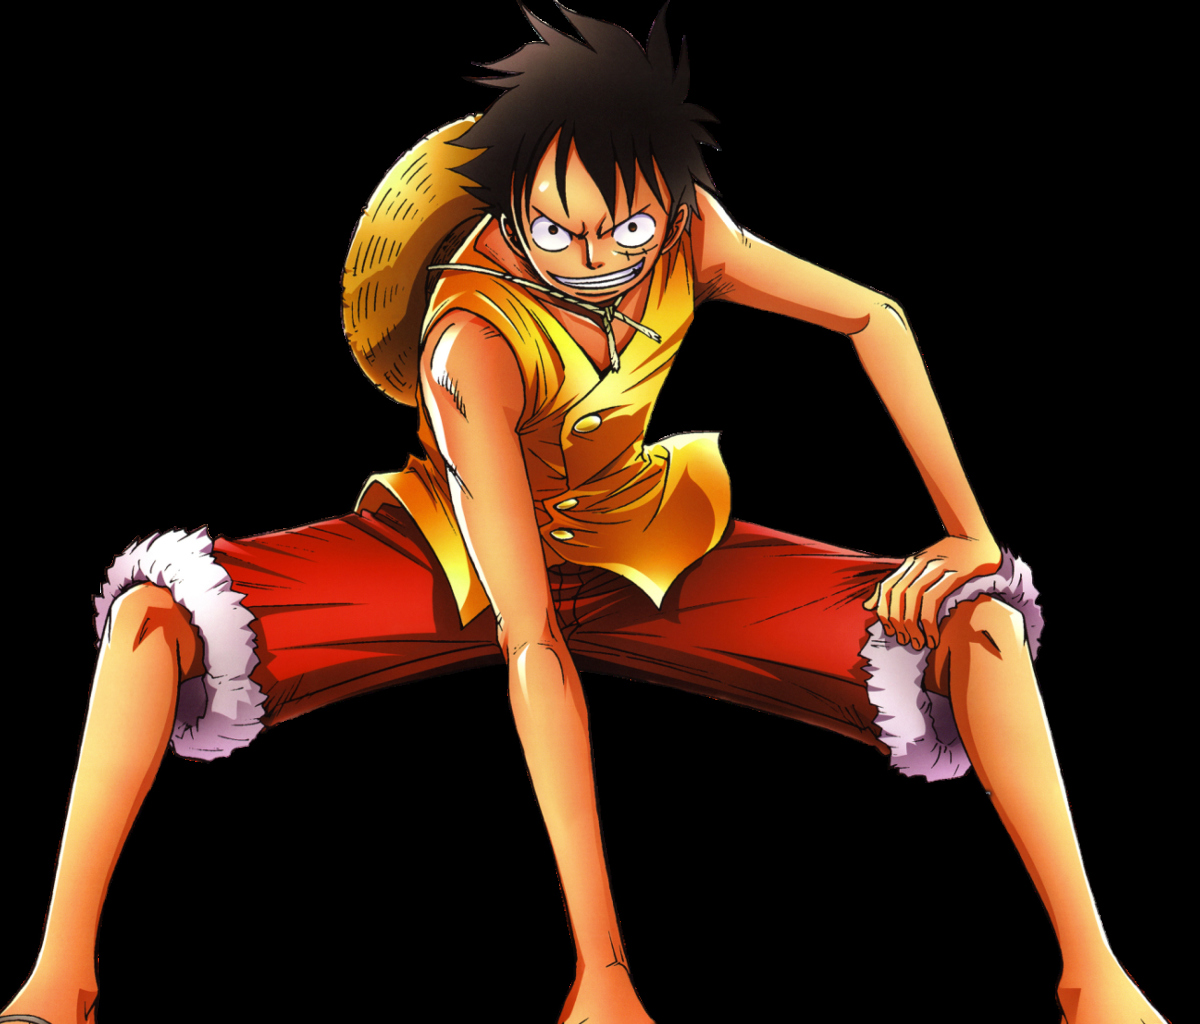 Sfondi Monkey D. Luffy - The One Piece 1200x1024